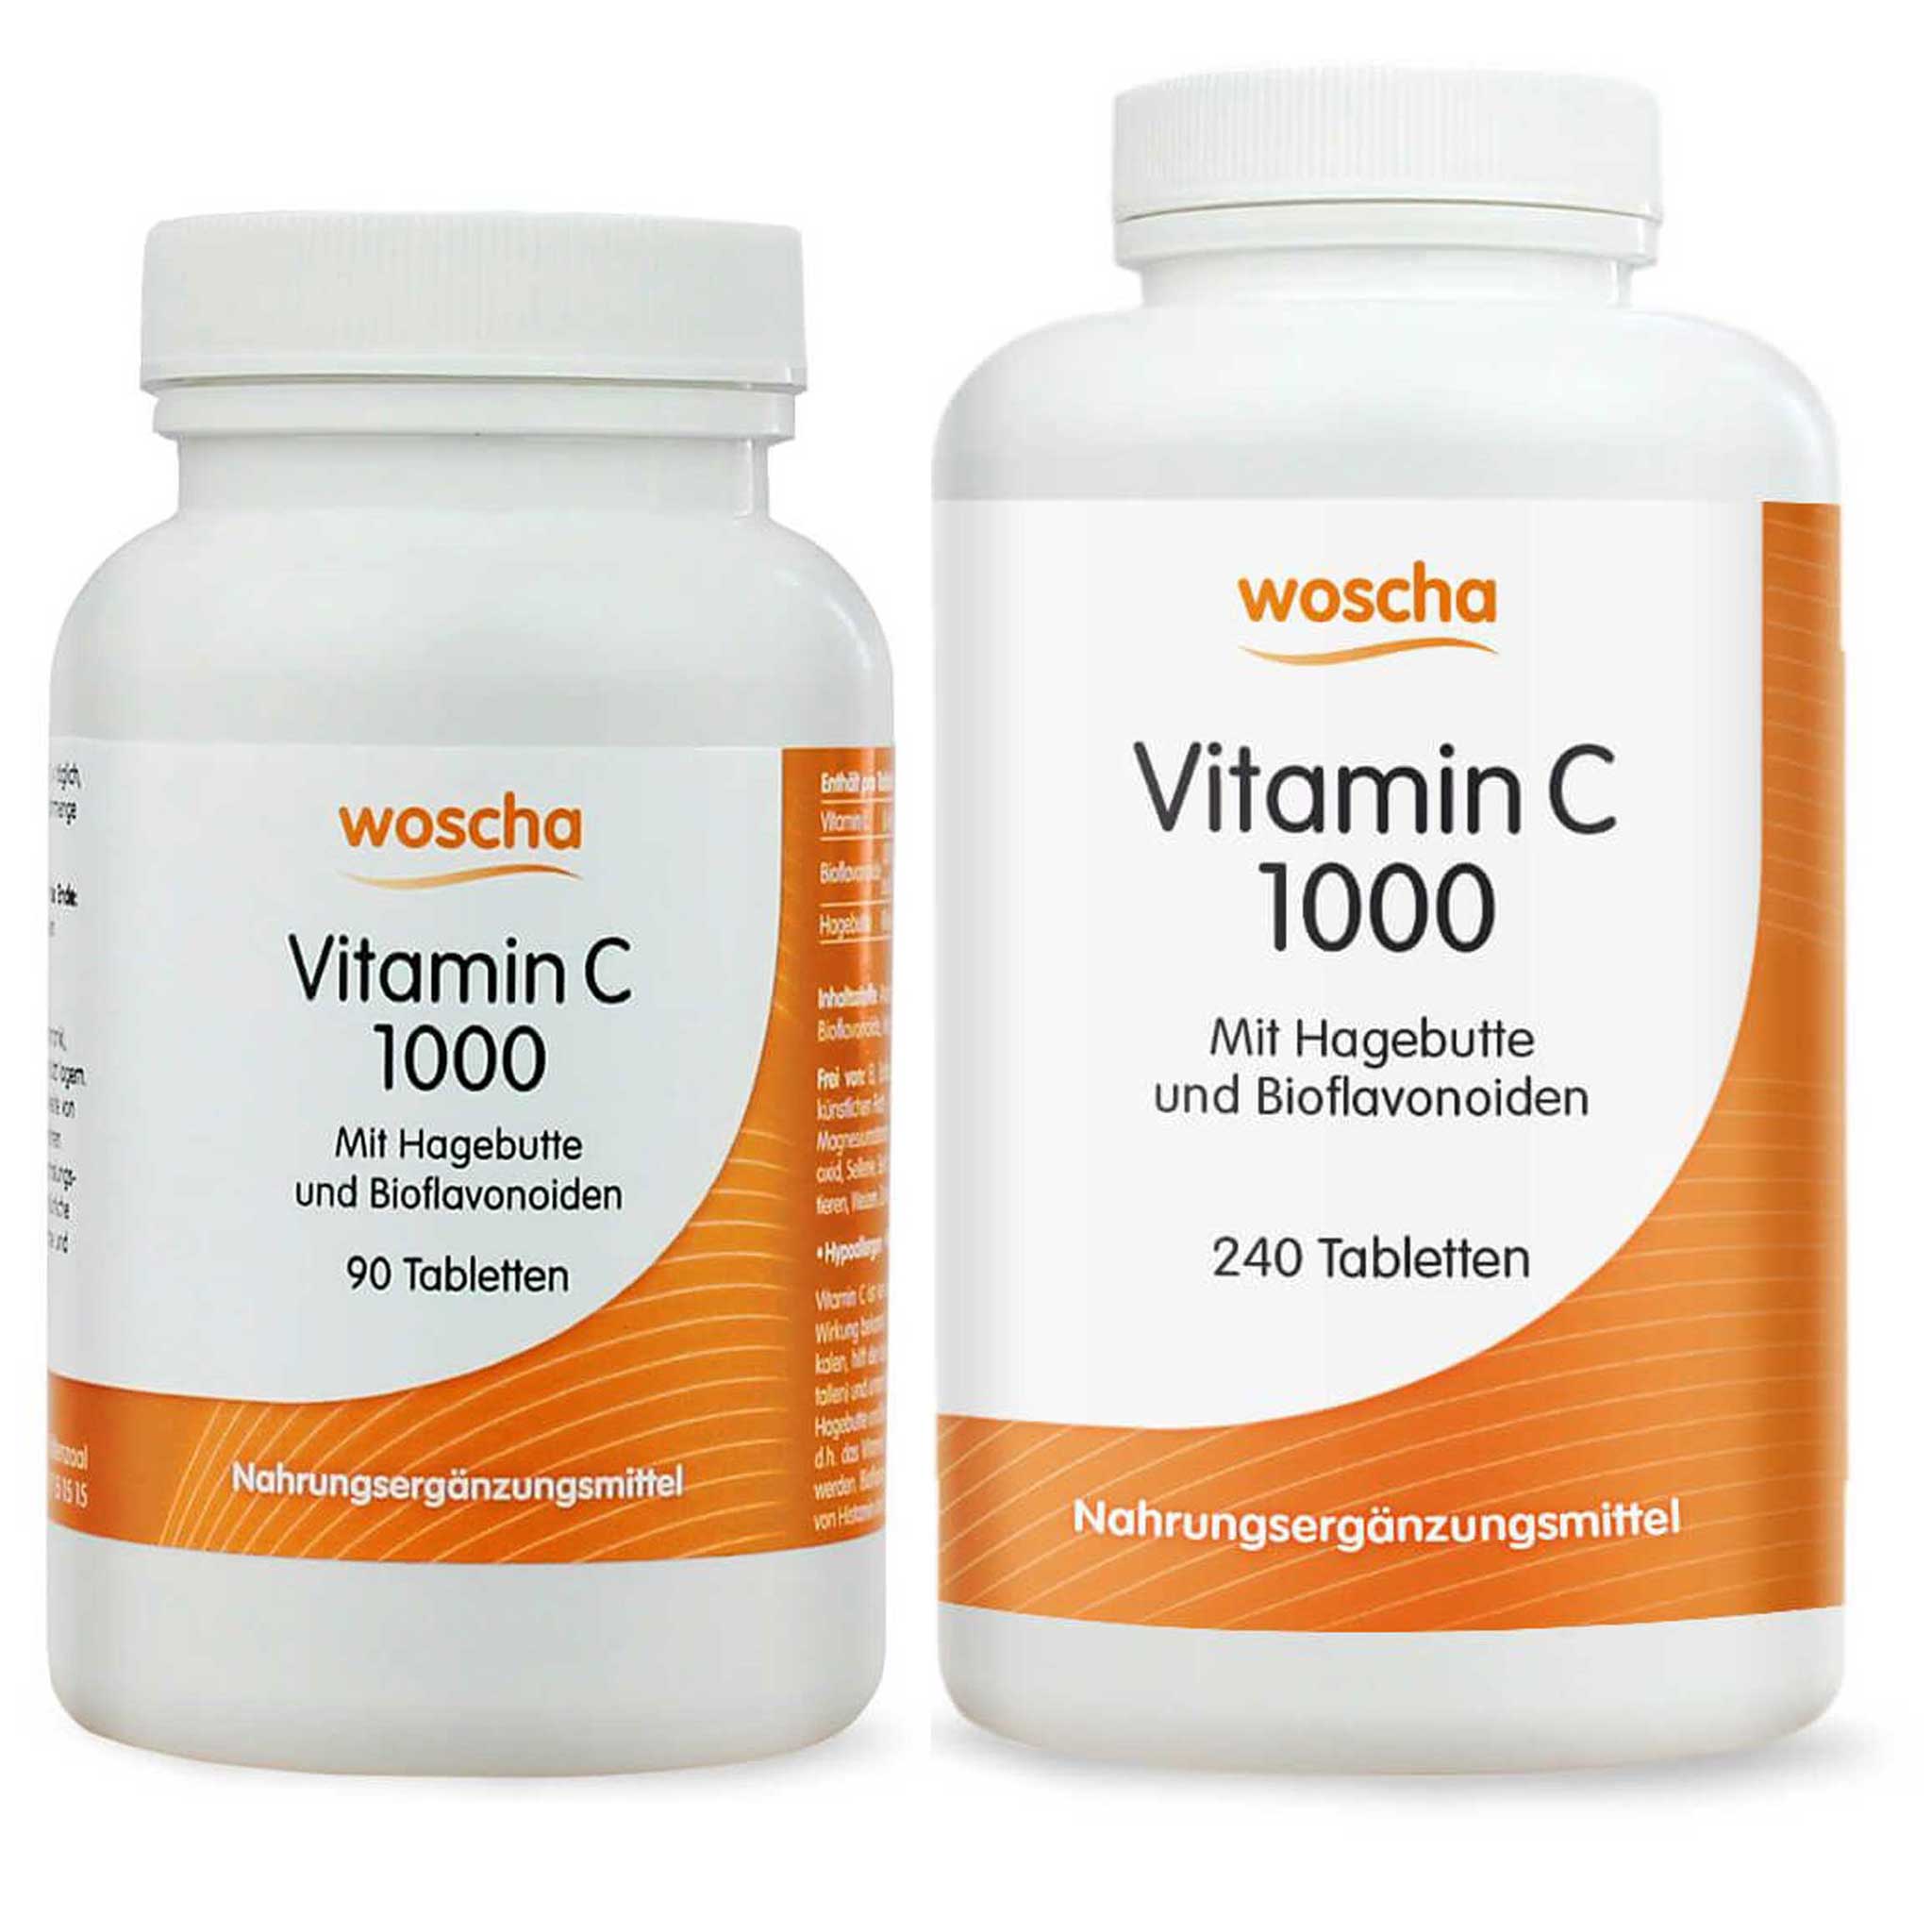 Woscha Vitamin C 1000 mit Hagebutte von podo medi in 90 Tabletten und 240 Tabletten Version Vorschau